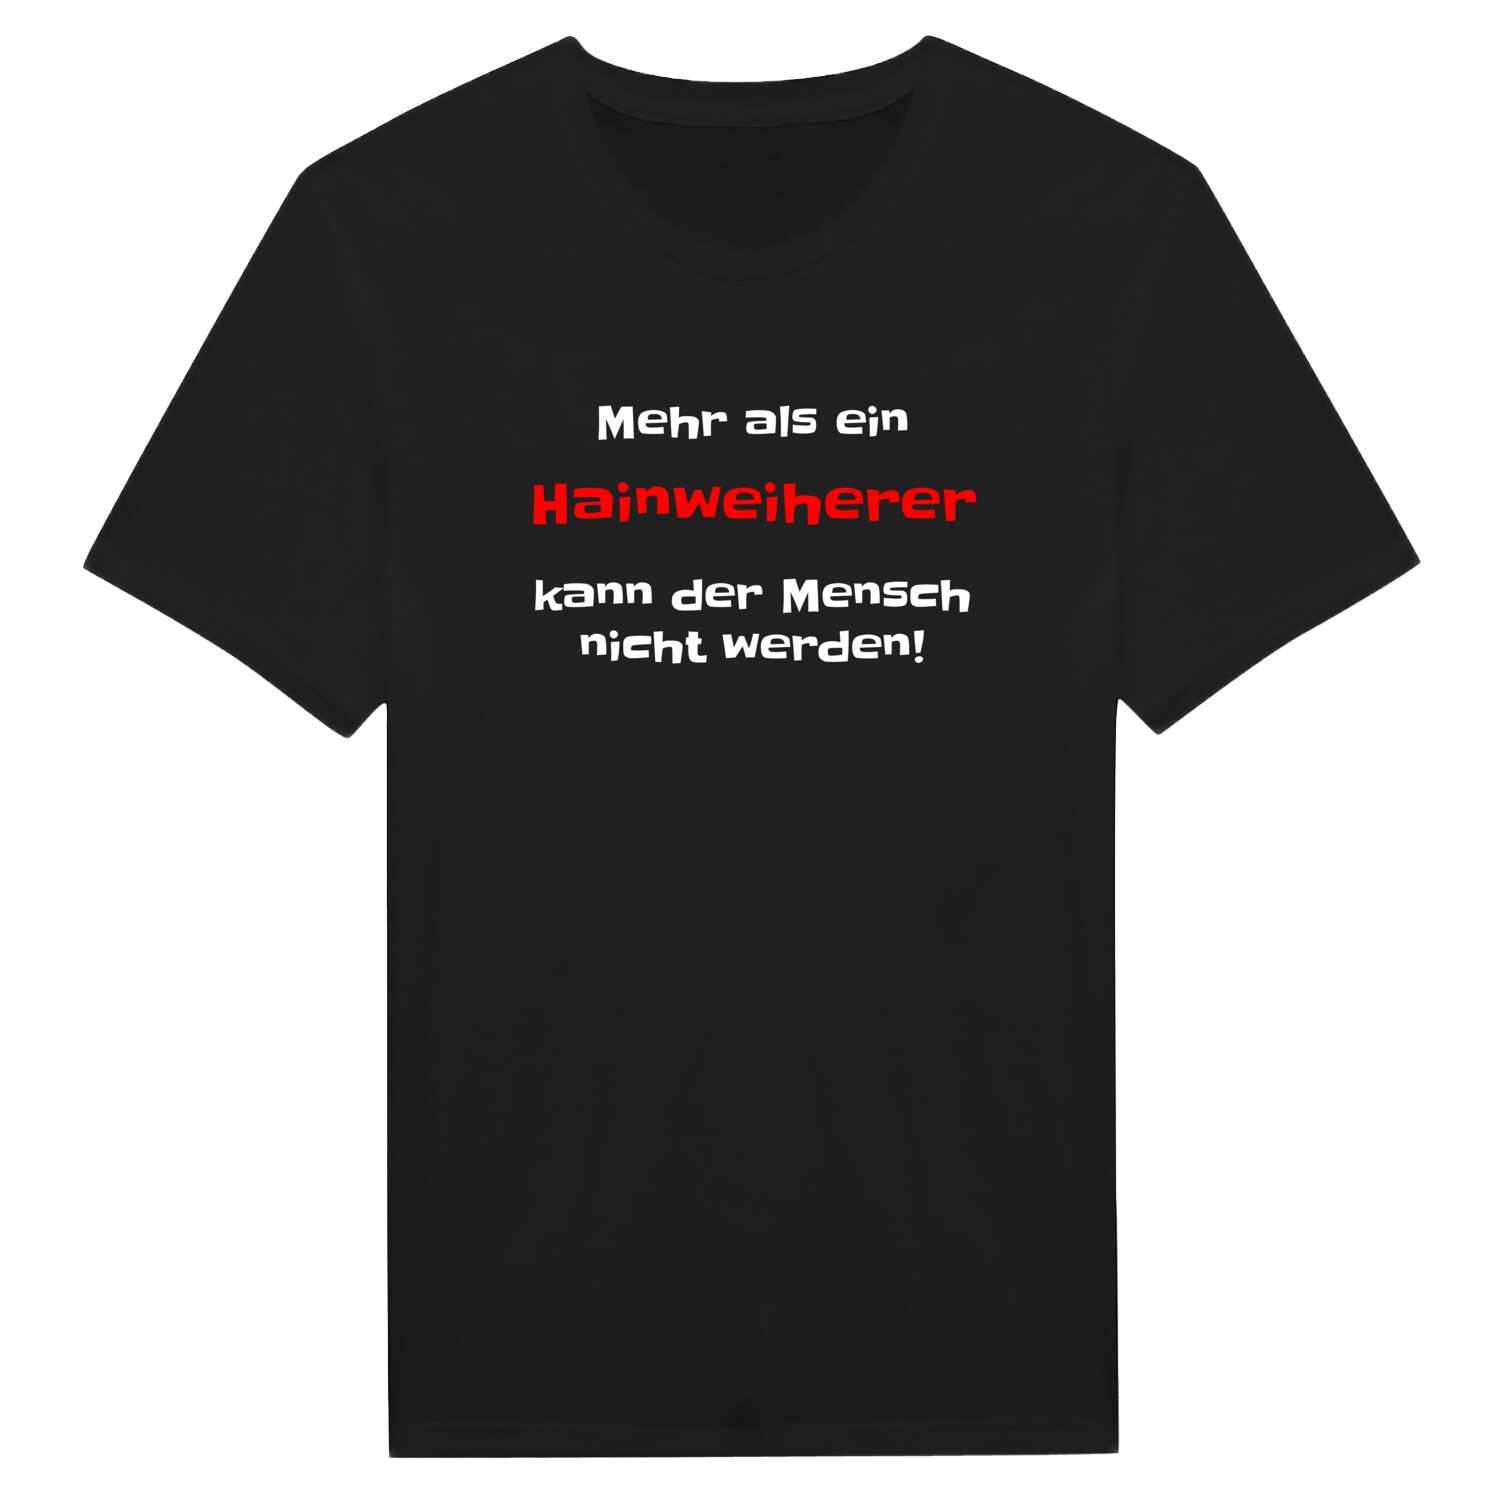 Hainweiher T-Shirt »Mehr als ein«